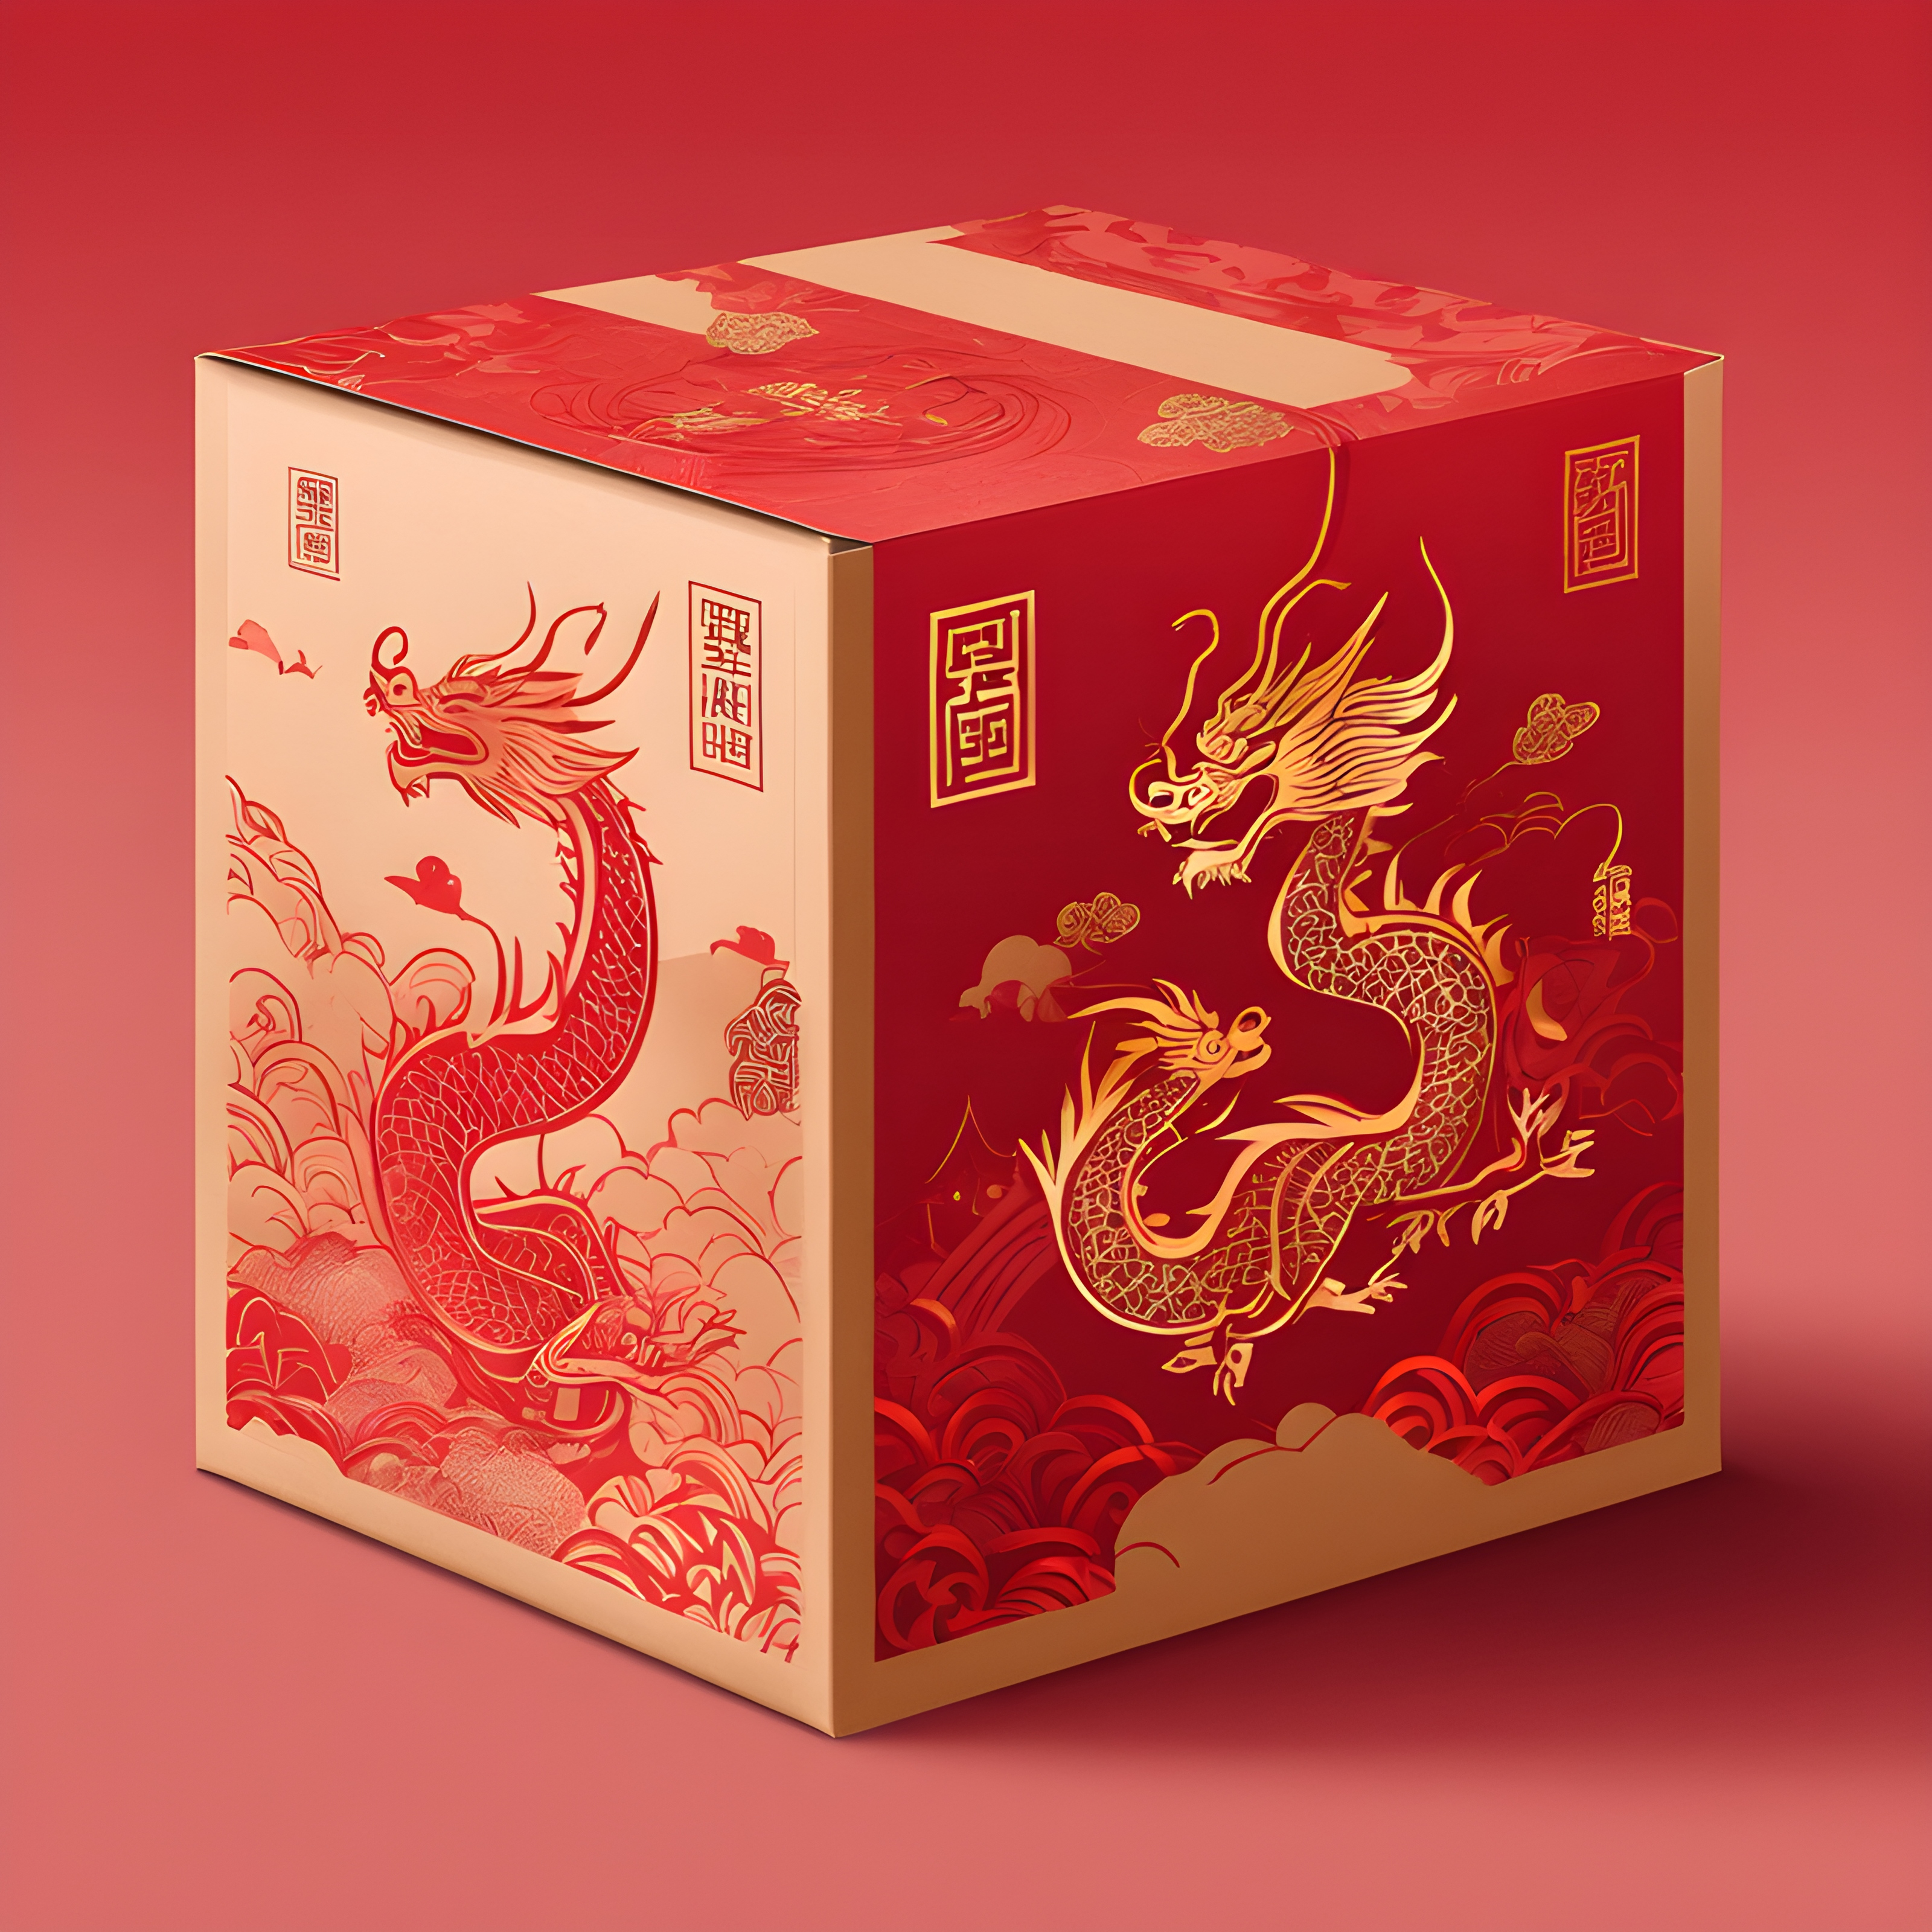 สร้างภาพ การออกแบบบรรจุภัณฑ์ กล่องสีแดง มีมังกรเป็นภาพประกอบ สไตล์วาดด้วยมือ น่ารัก ภาพประกอบเวกเตอร์ เส้นหนา สไตล์จีน Guochao กล่องกระดาษแข็ง รื่นเริง สีสันสะดุดตา